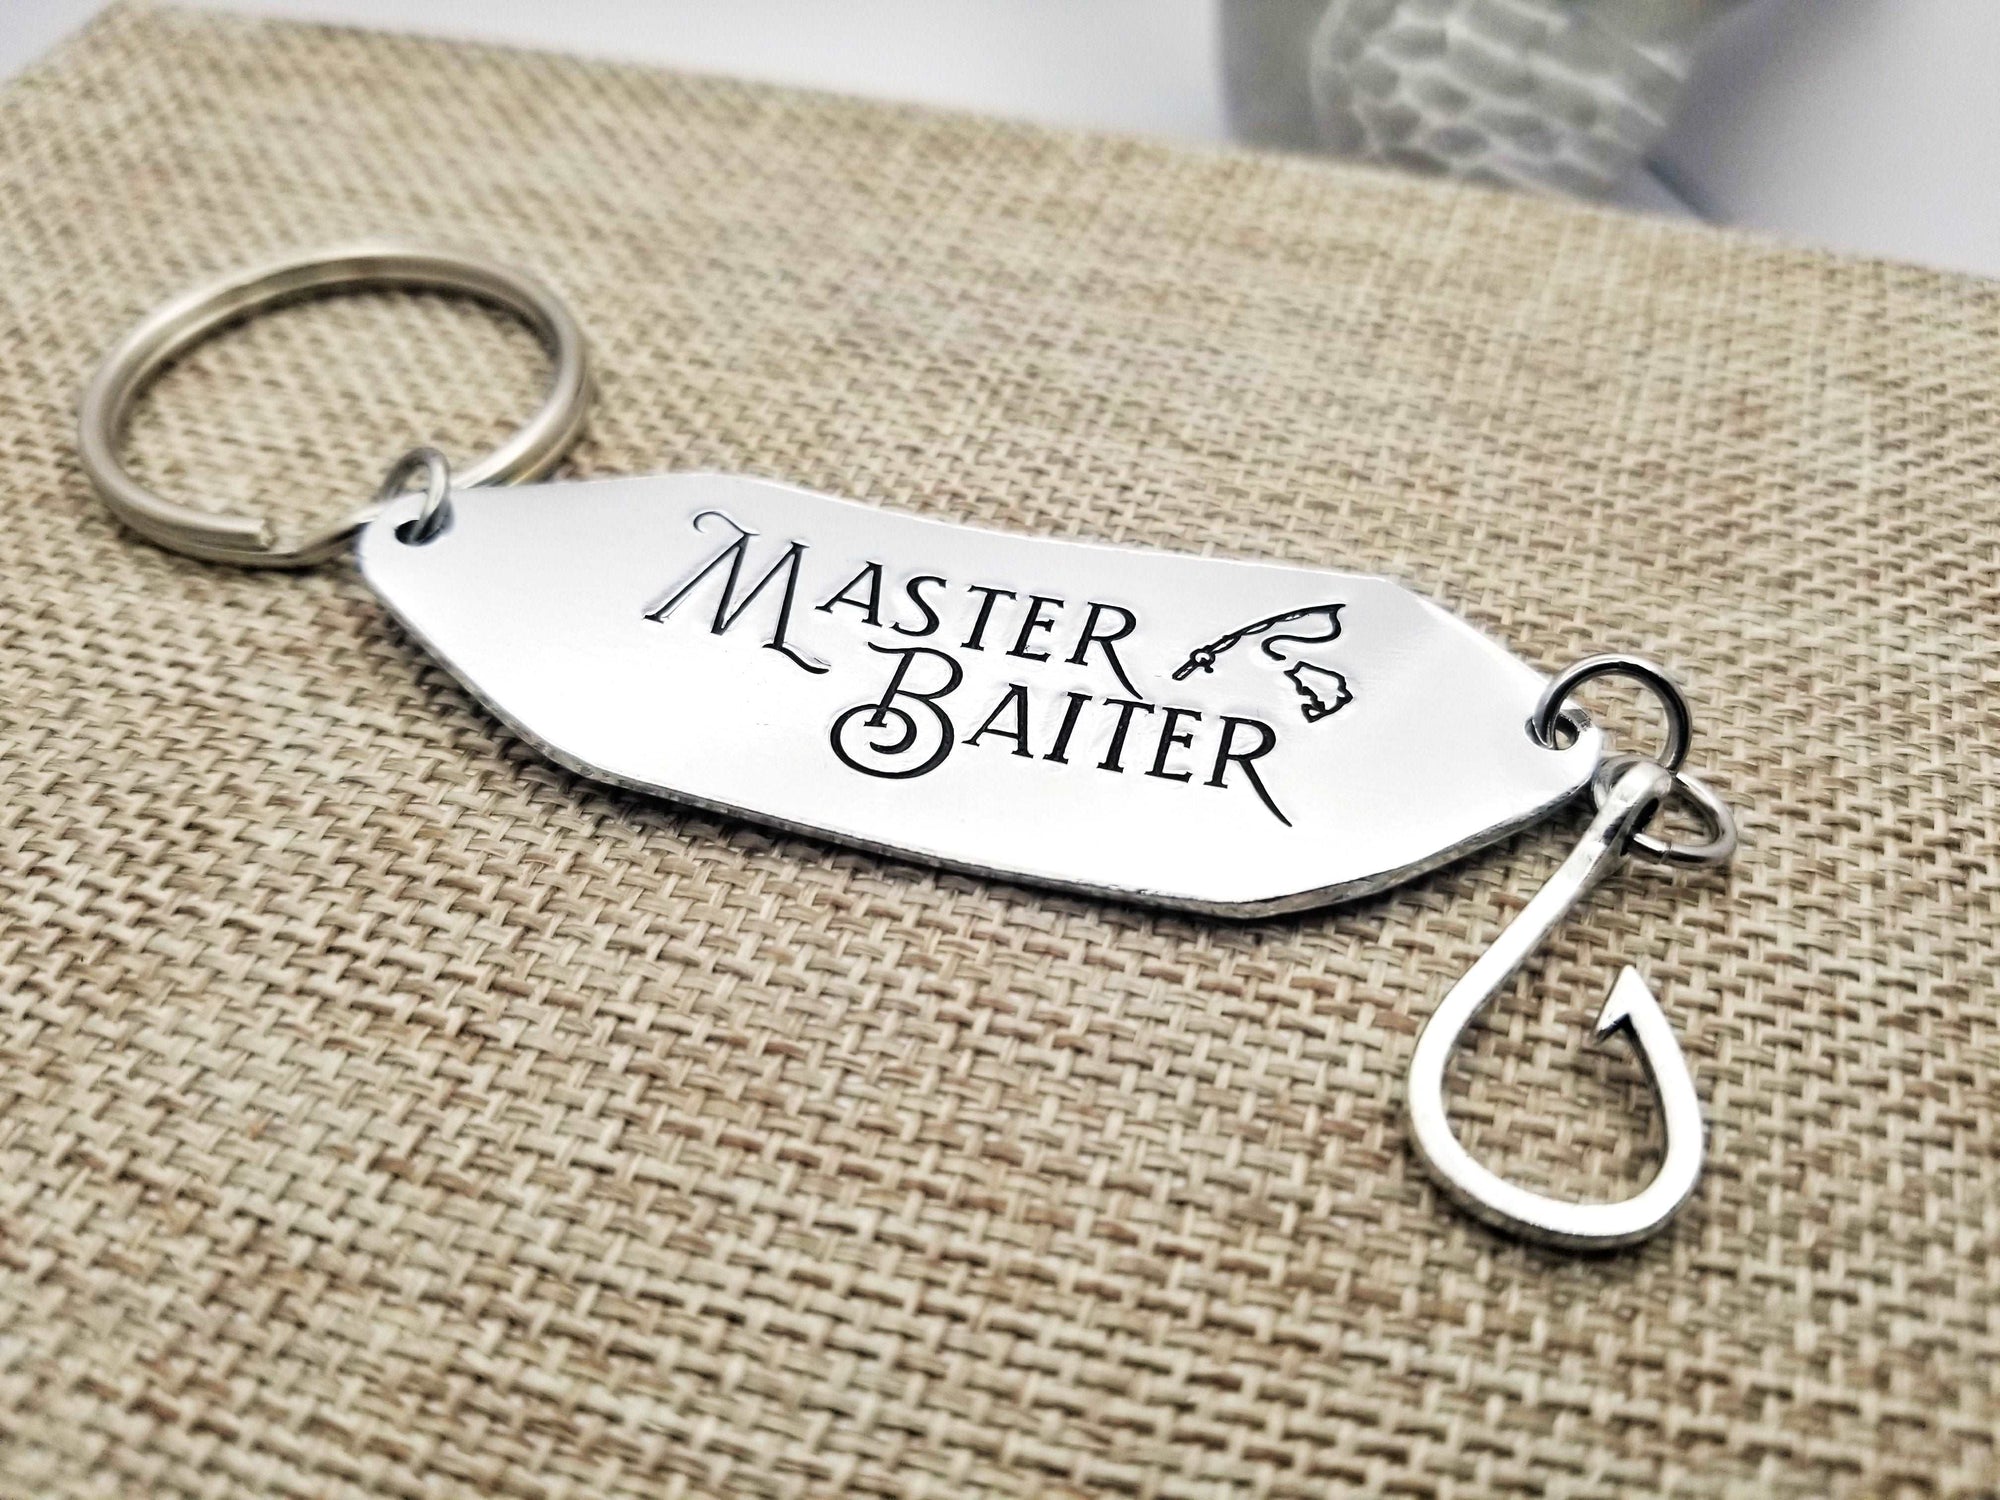 Master Baiter, Fisherman Gift, Fisherman Husband, Funny Gift, Pun